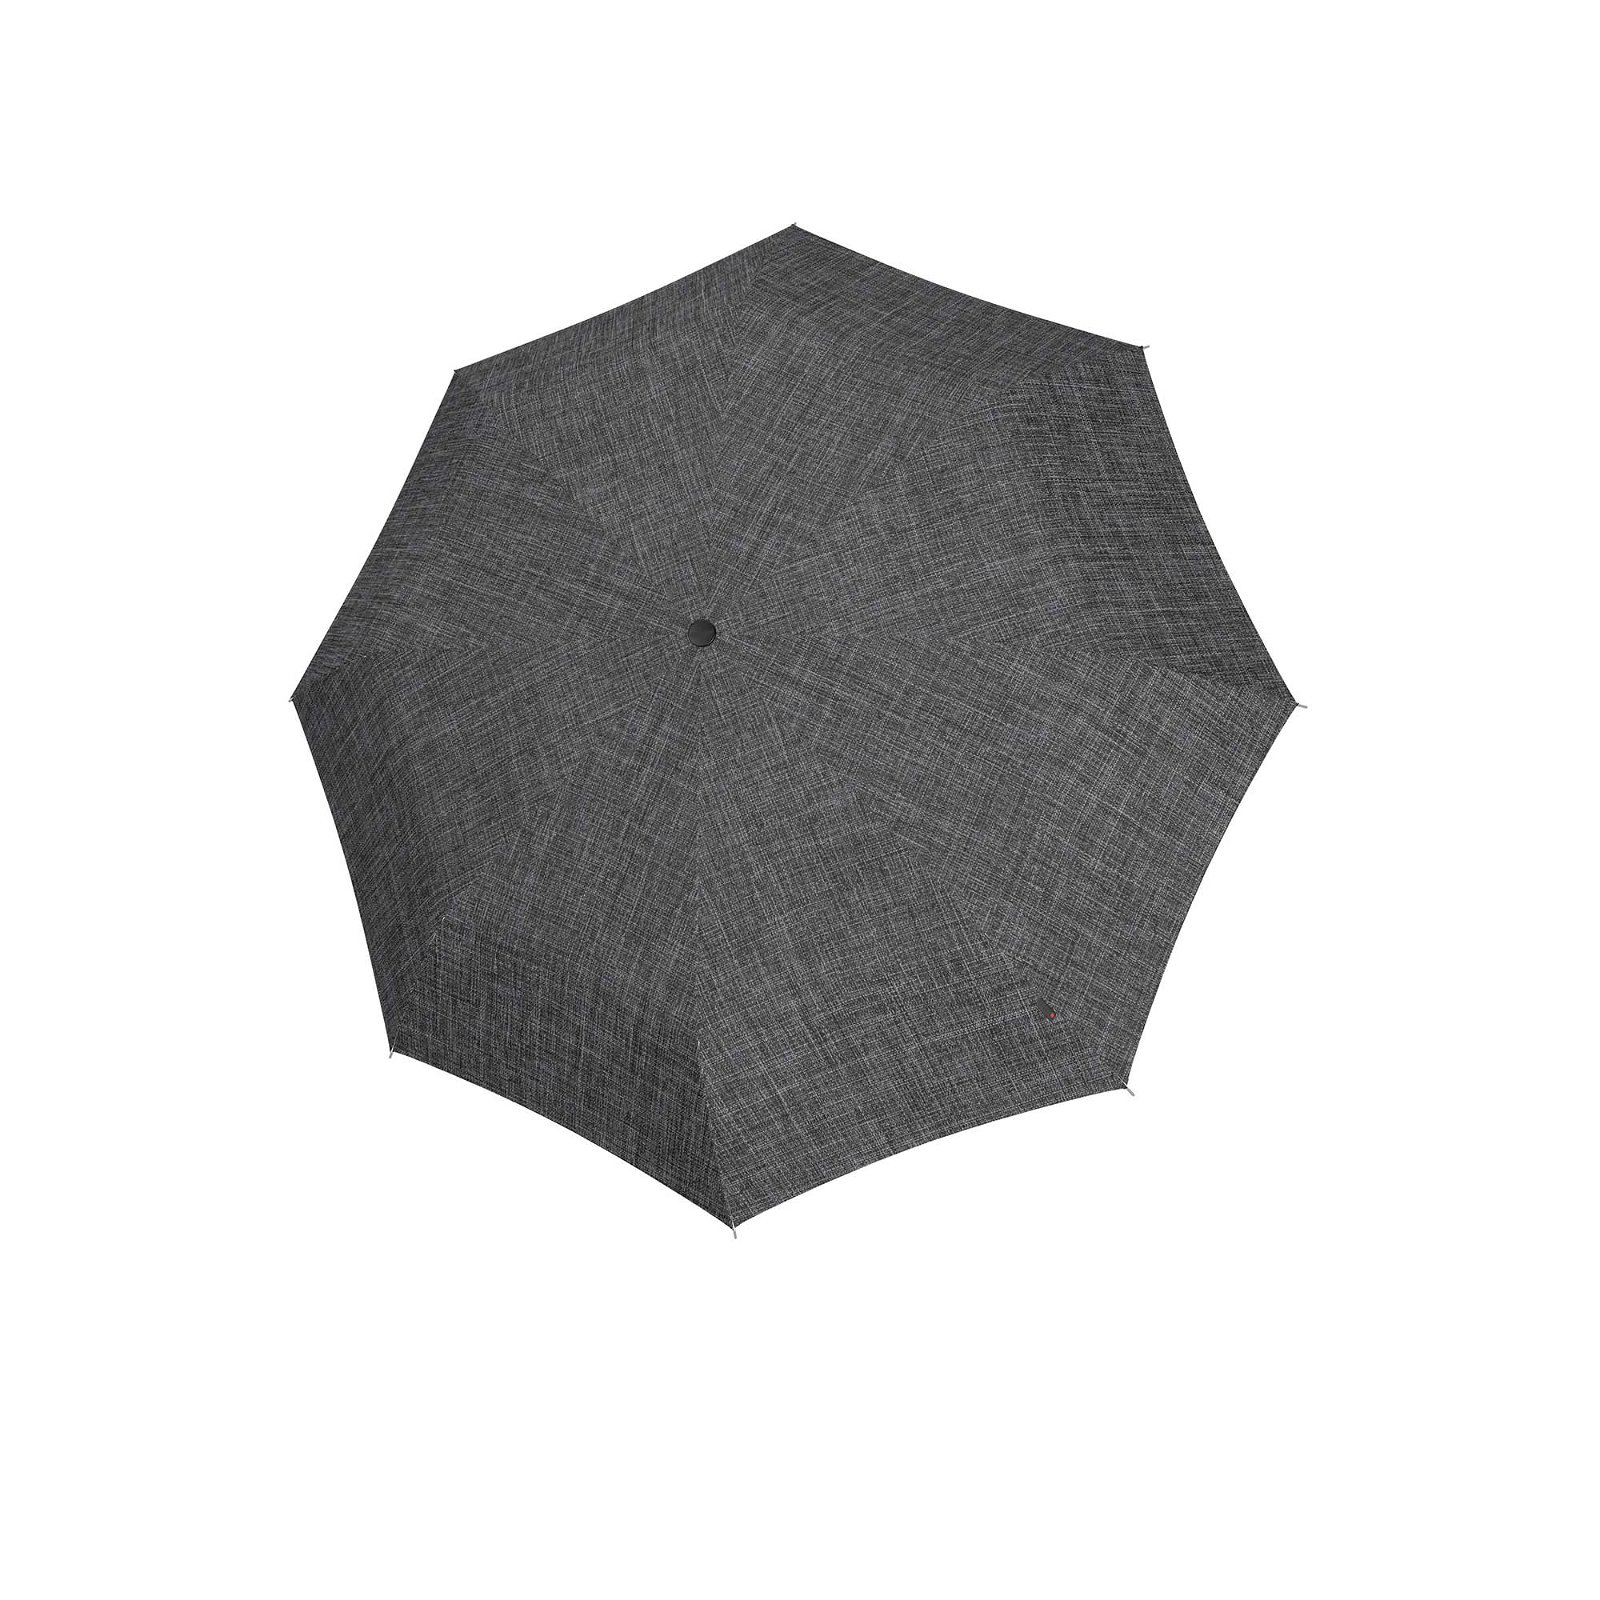 Regenschirm pocket duomatic